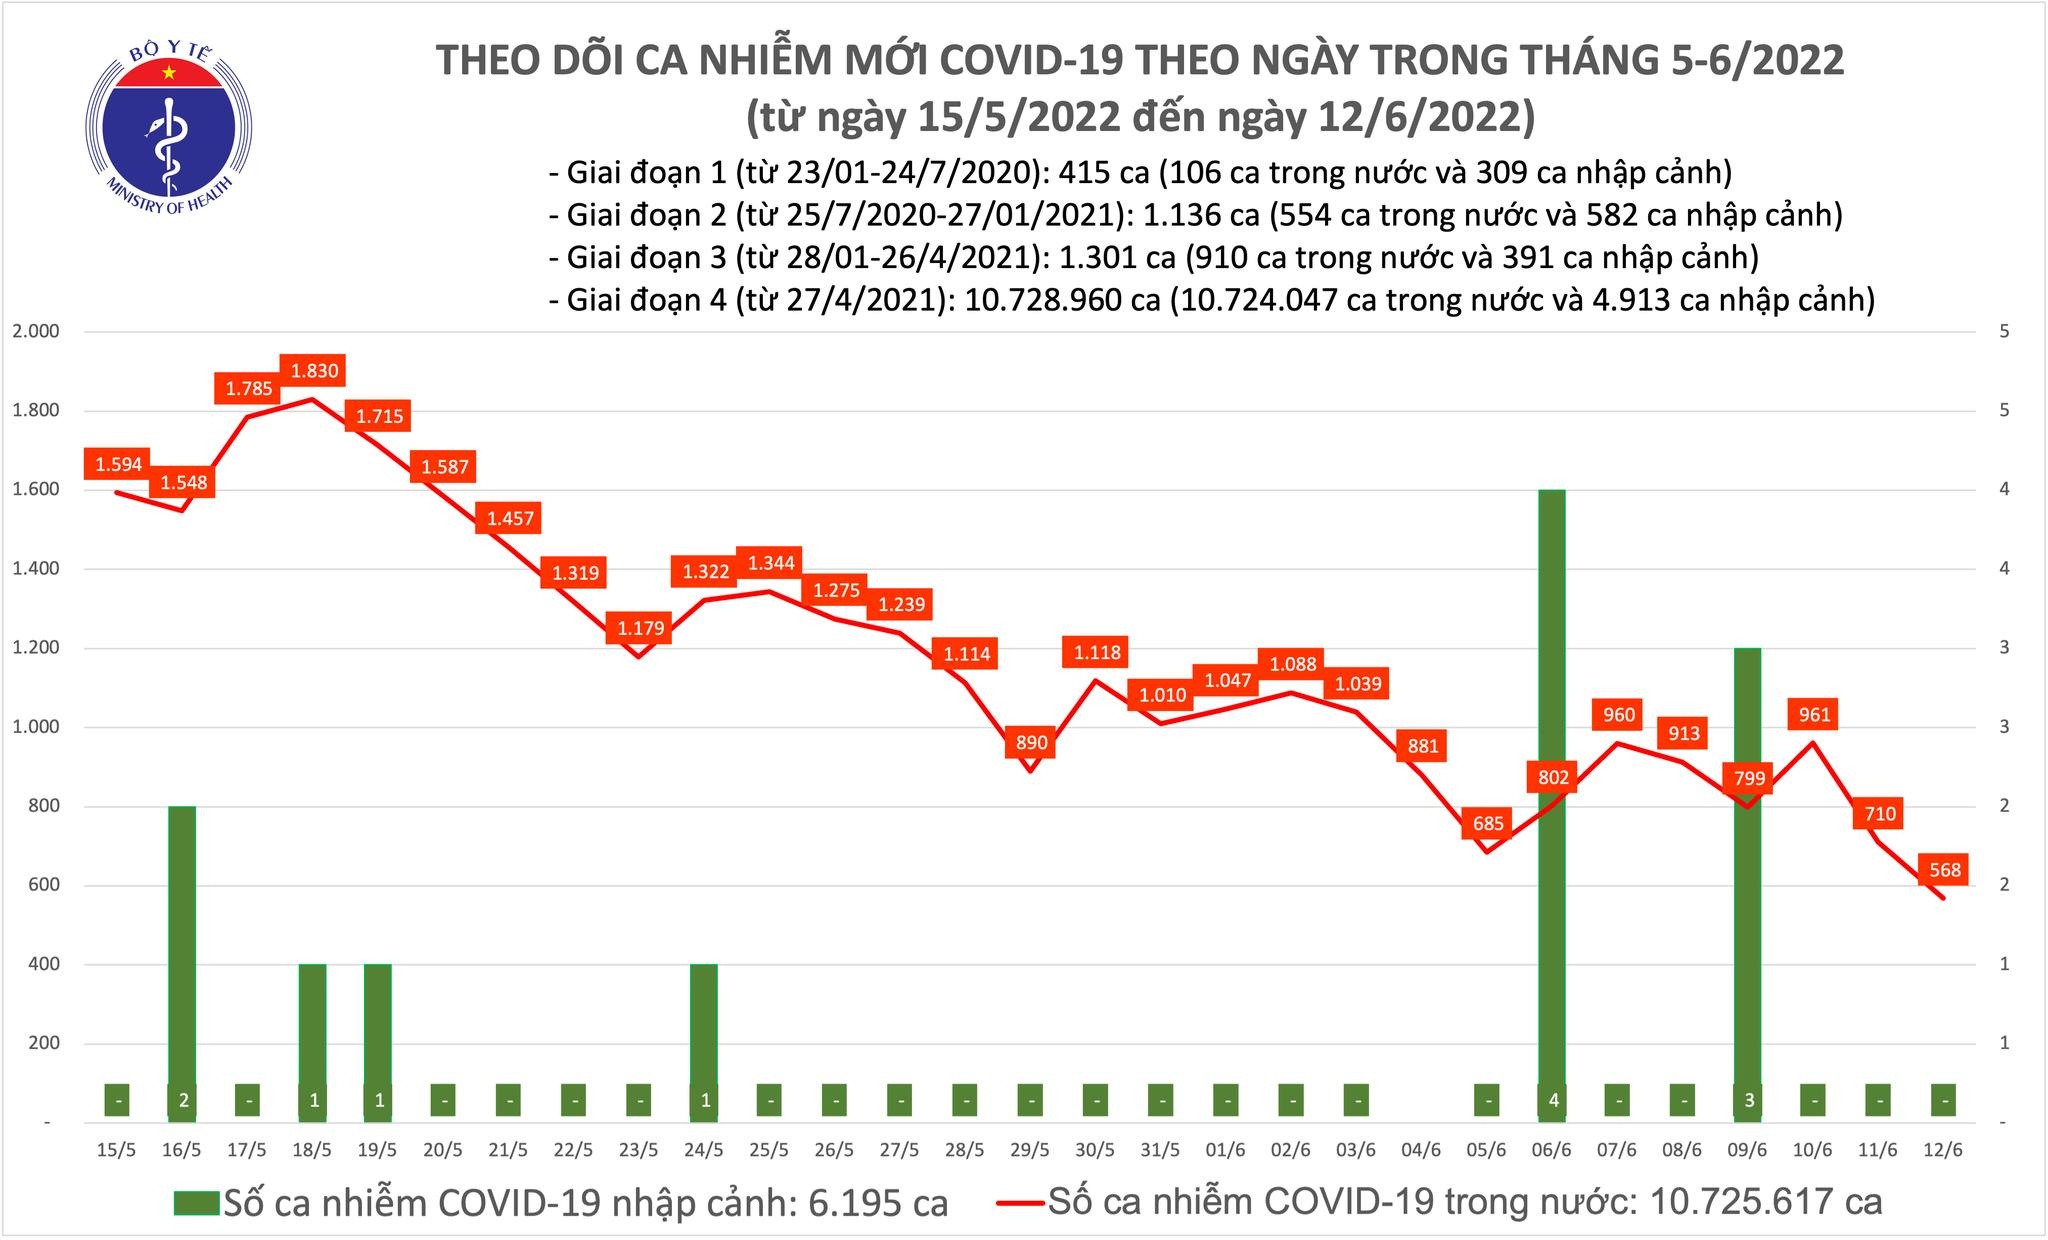 Việt Nam ghi nhận 568 ca mắc mới COVID-19 trong ngày 12/6